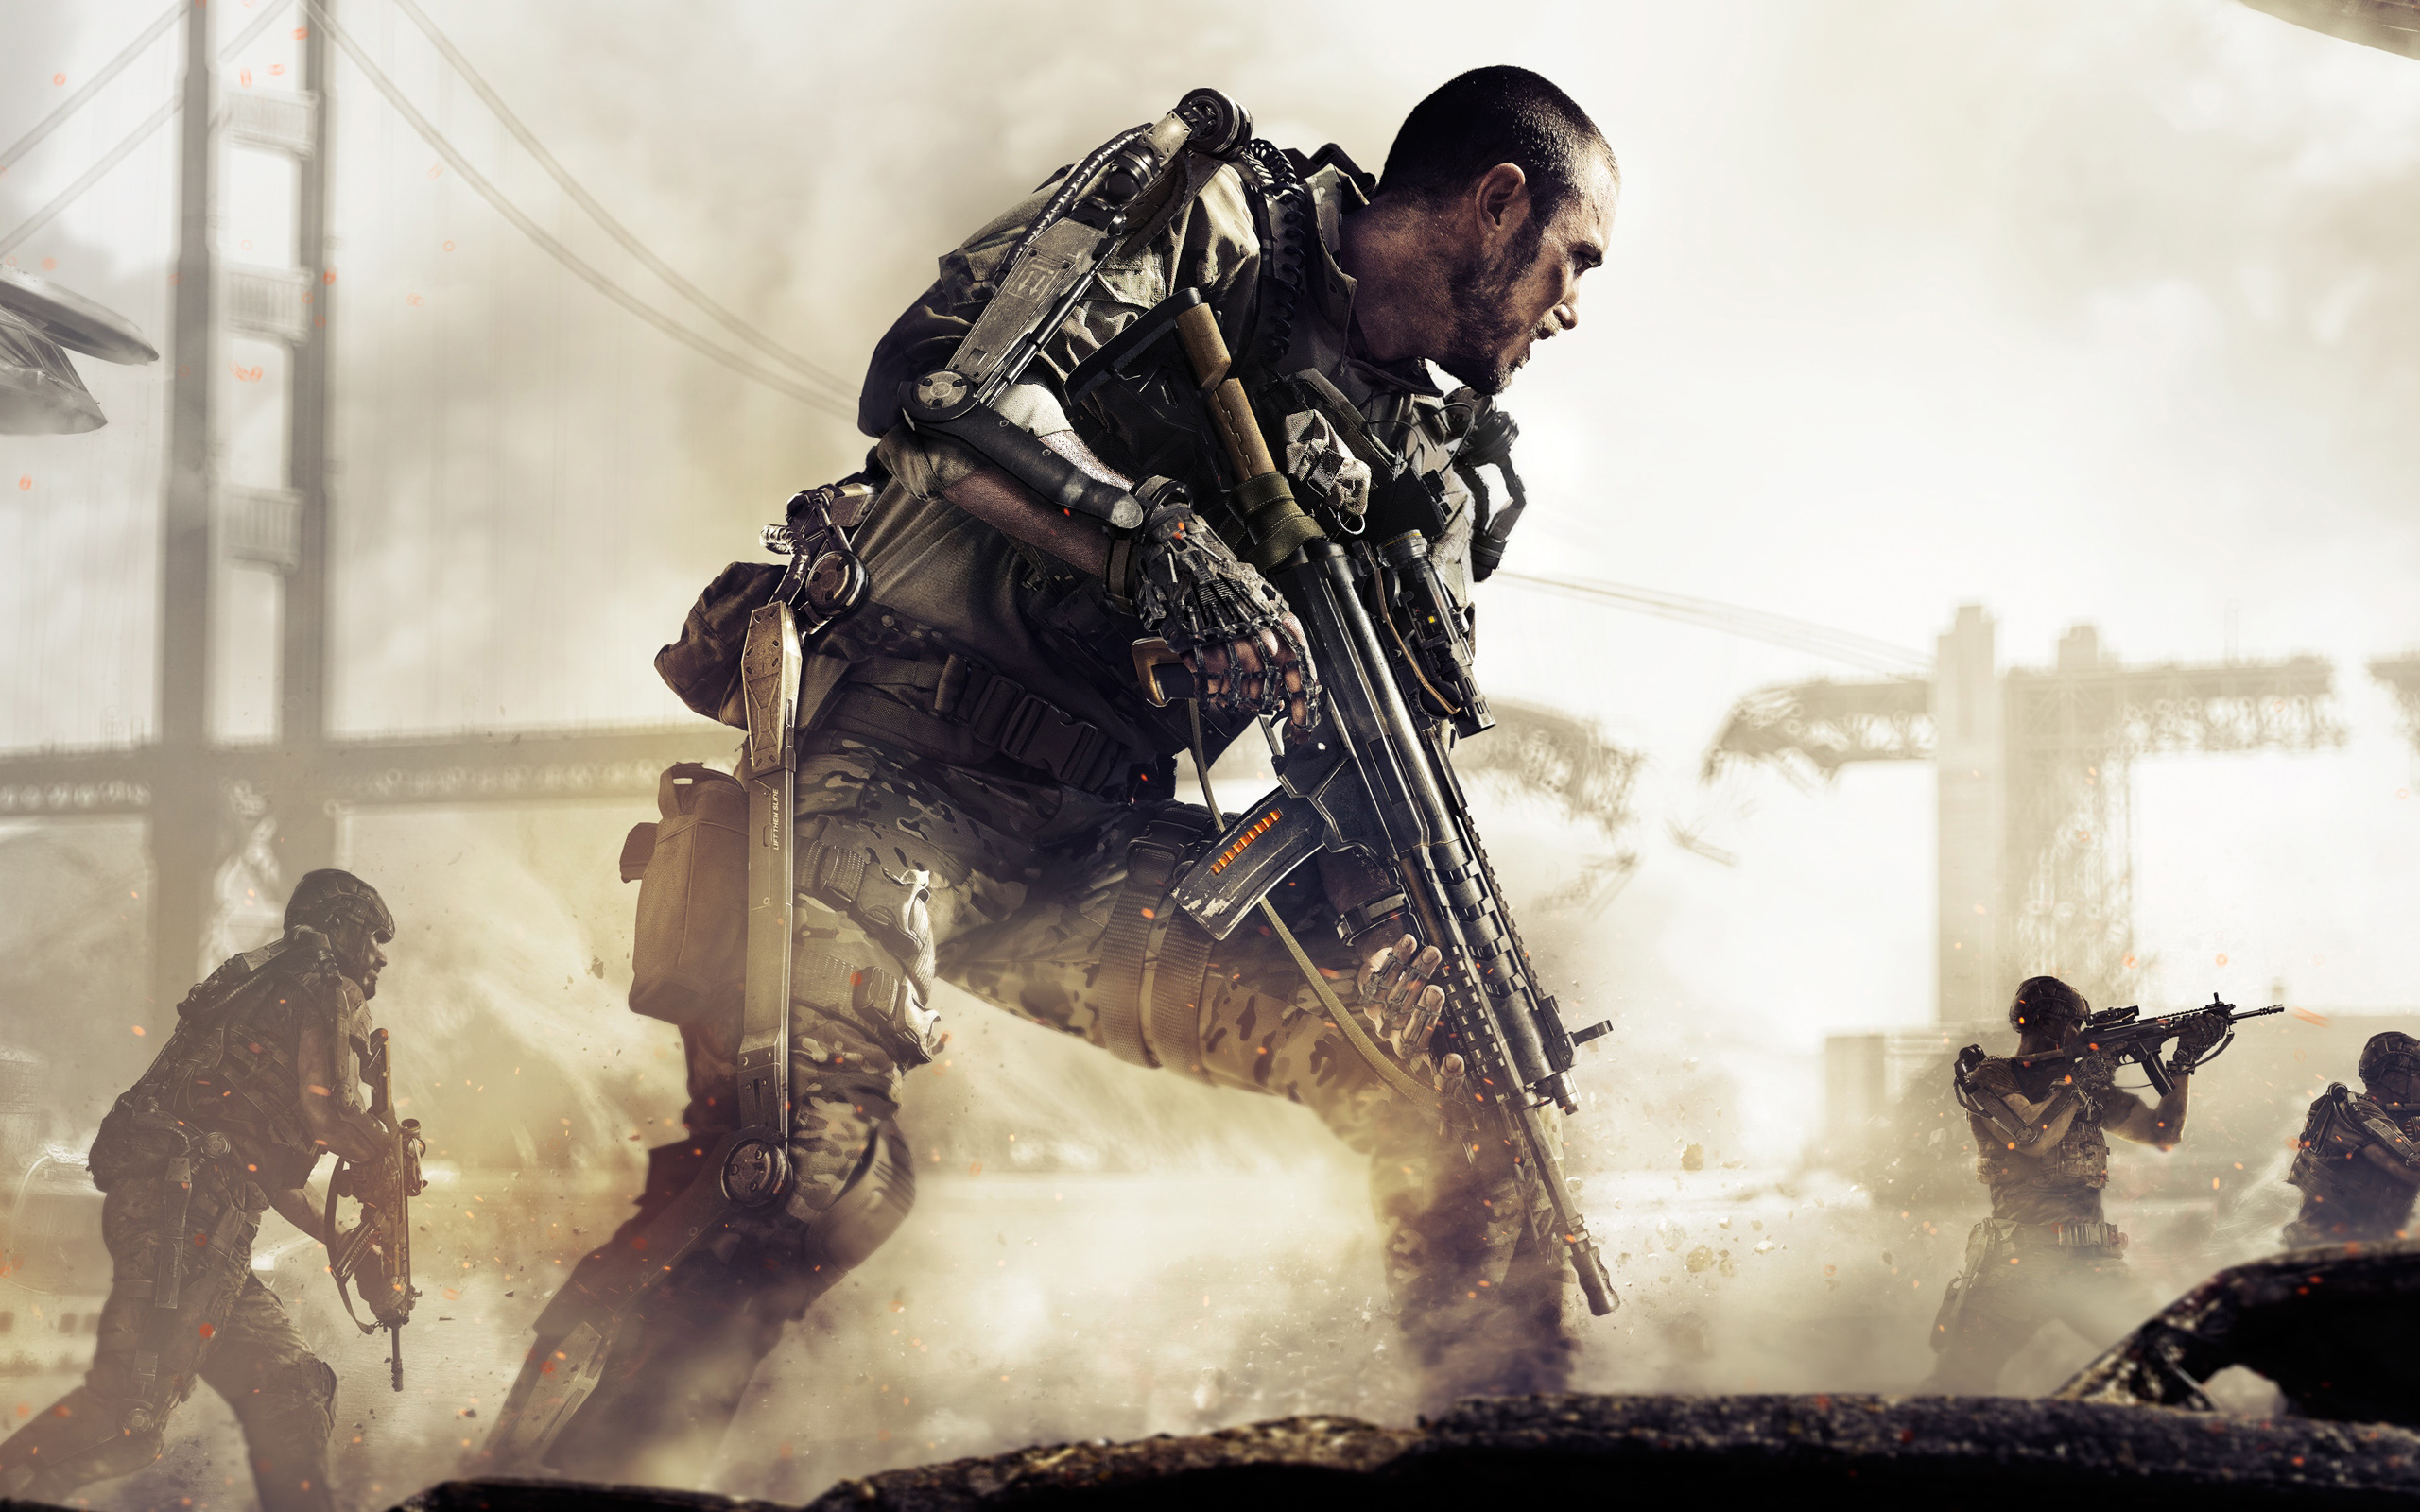 Meilleurs fonds d'écran Call Of Duty: Advanced Warfare pour l'écran du téléphone